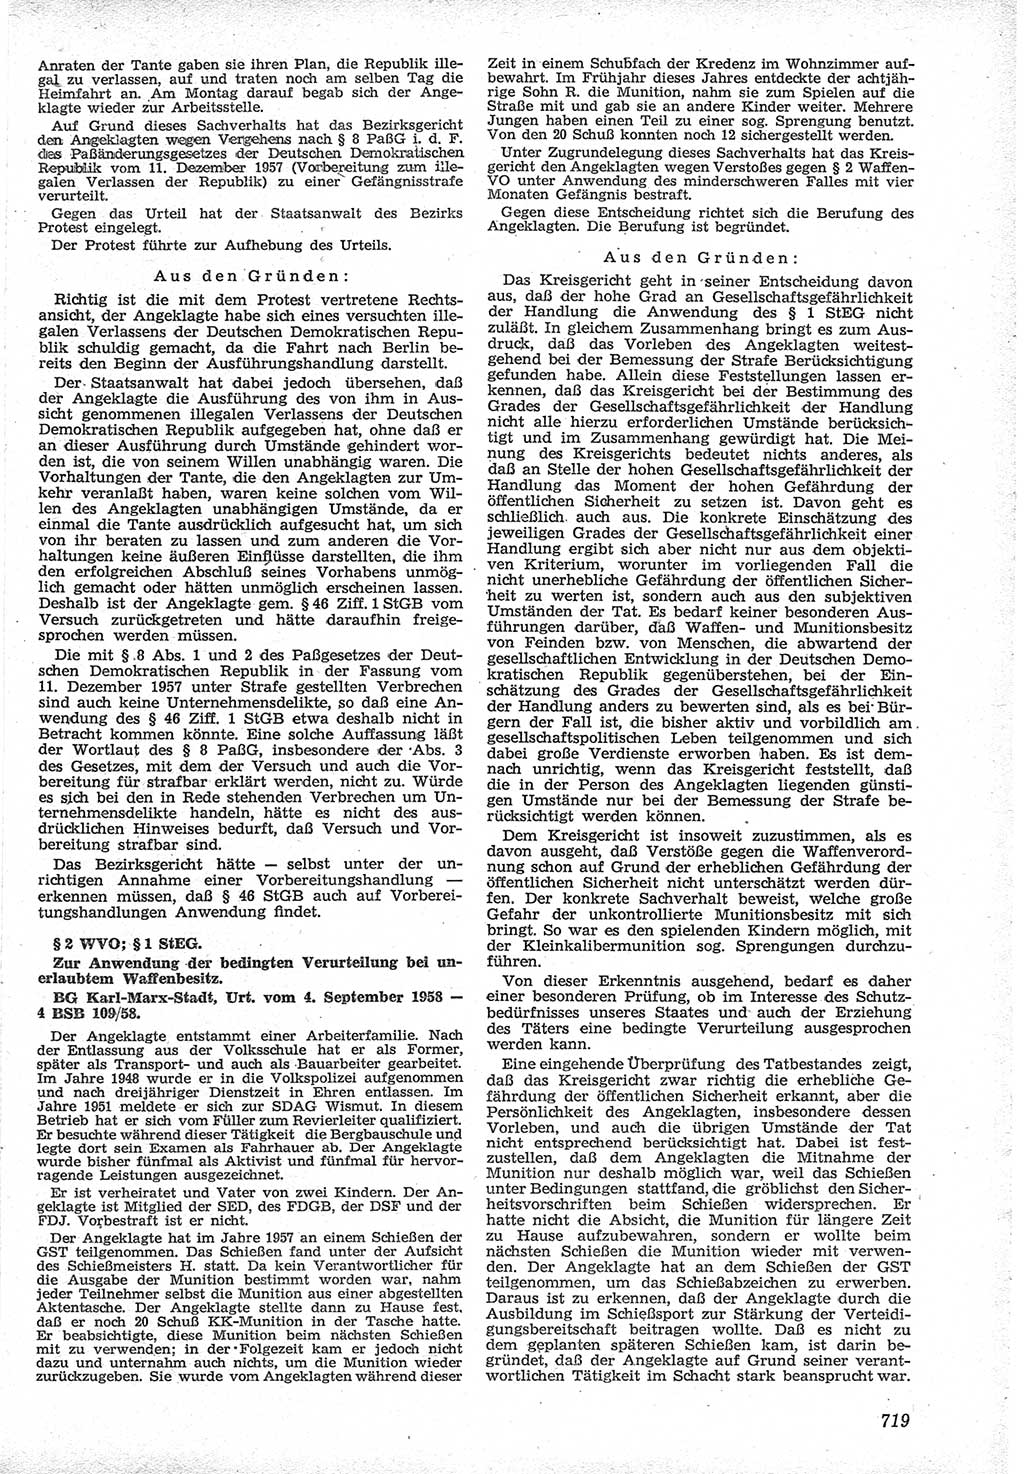 Neue Justiz (NJ), Zeitschrift für Recht und Rechtswissenschaft [Deutsche Demokratische Republik (DDR)], 12. Jahrgang 1958, Seite 719 (NJ DDR 1958, S. 719)